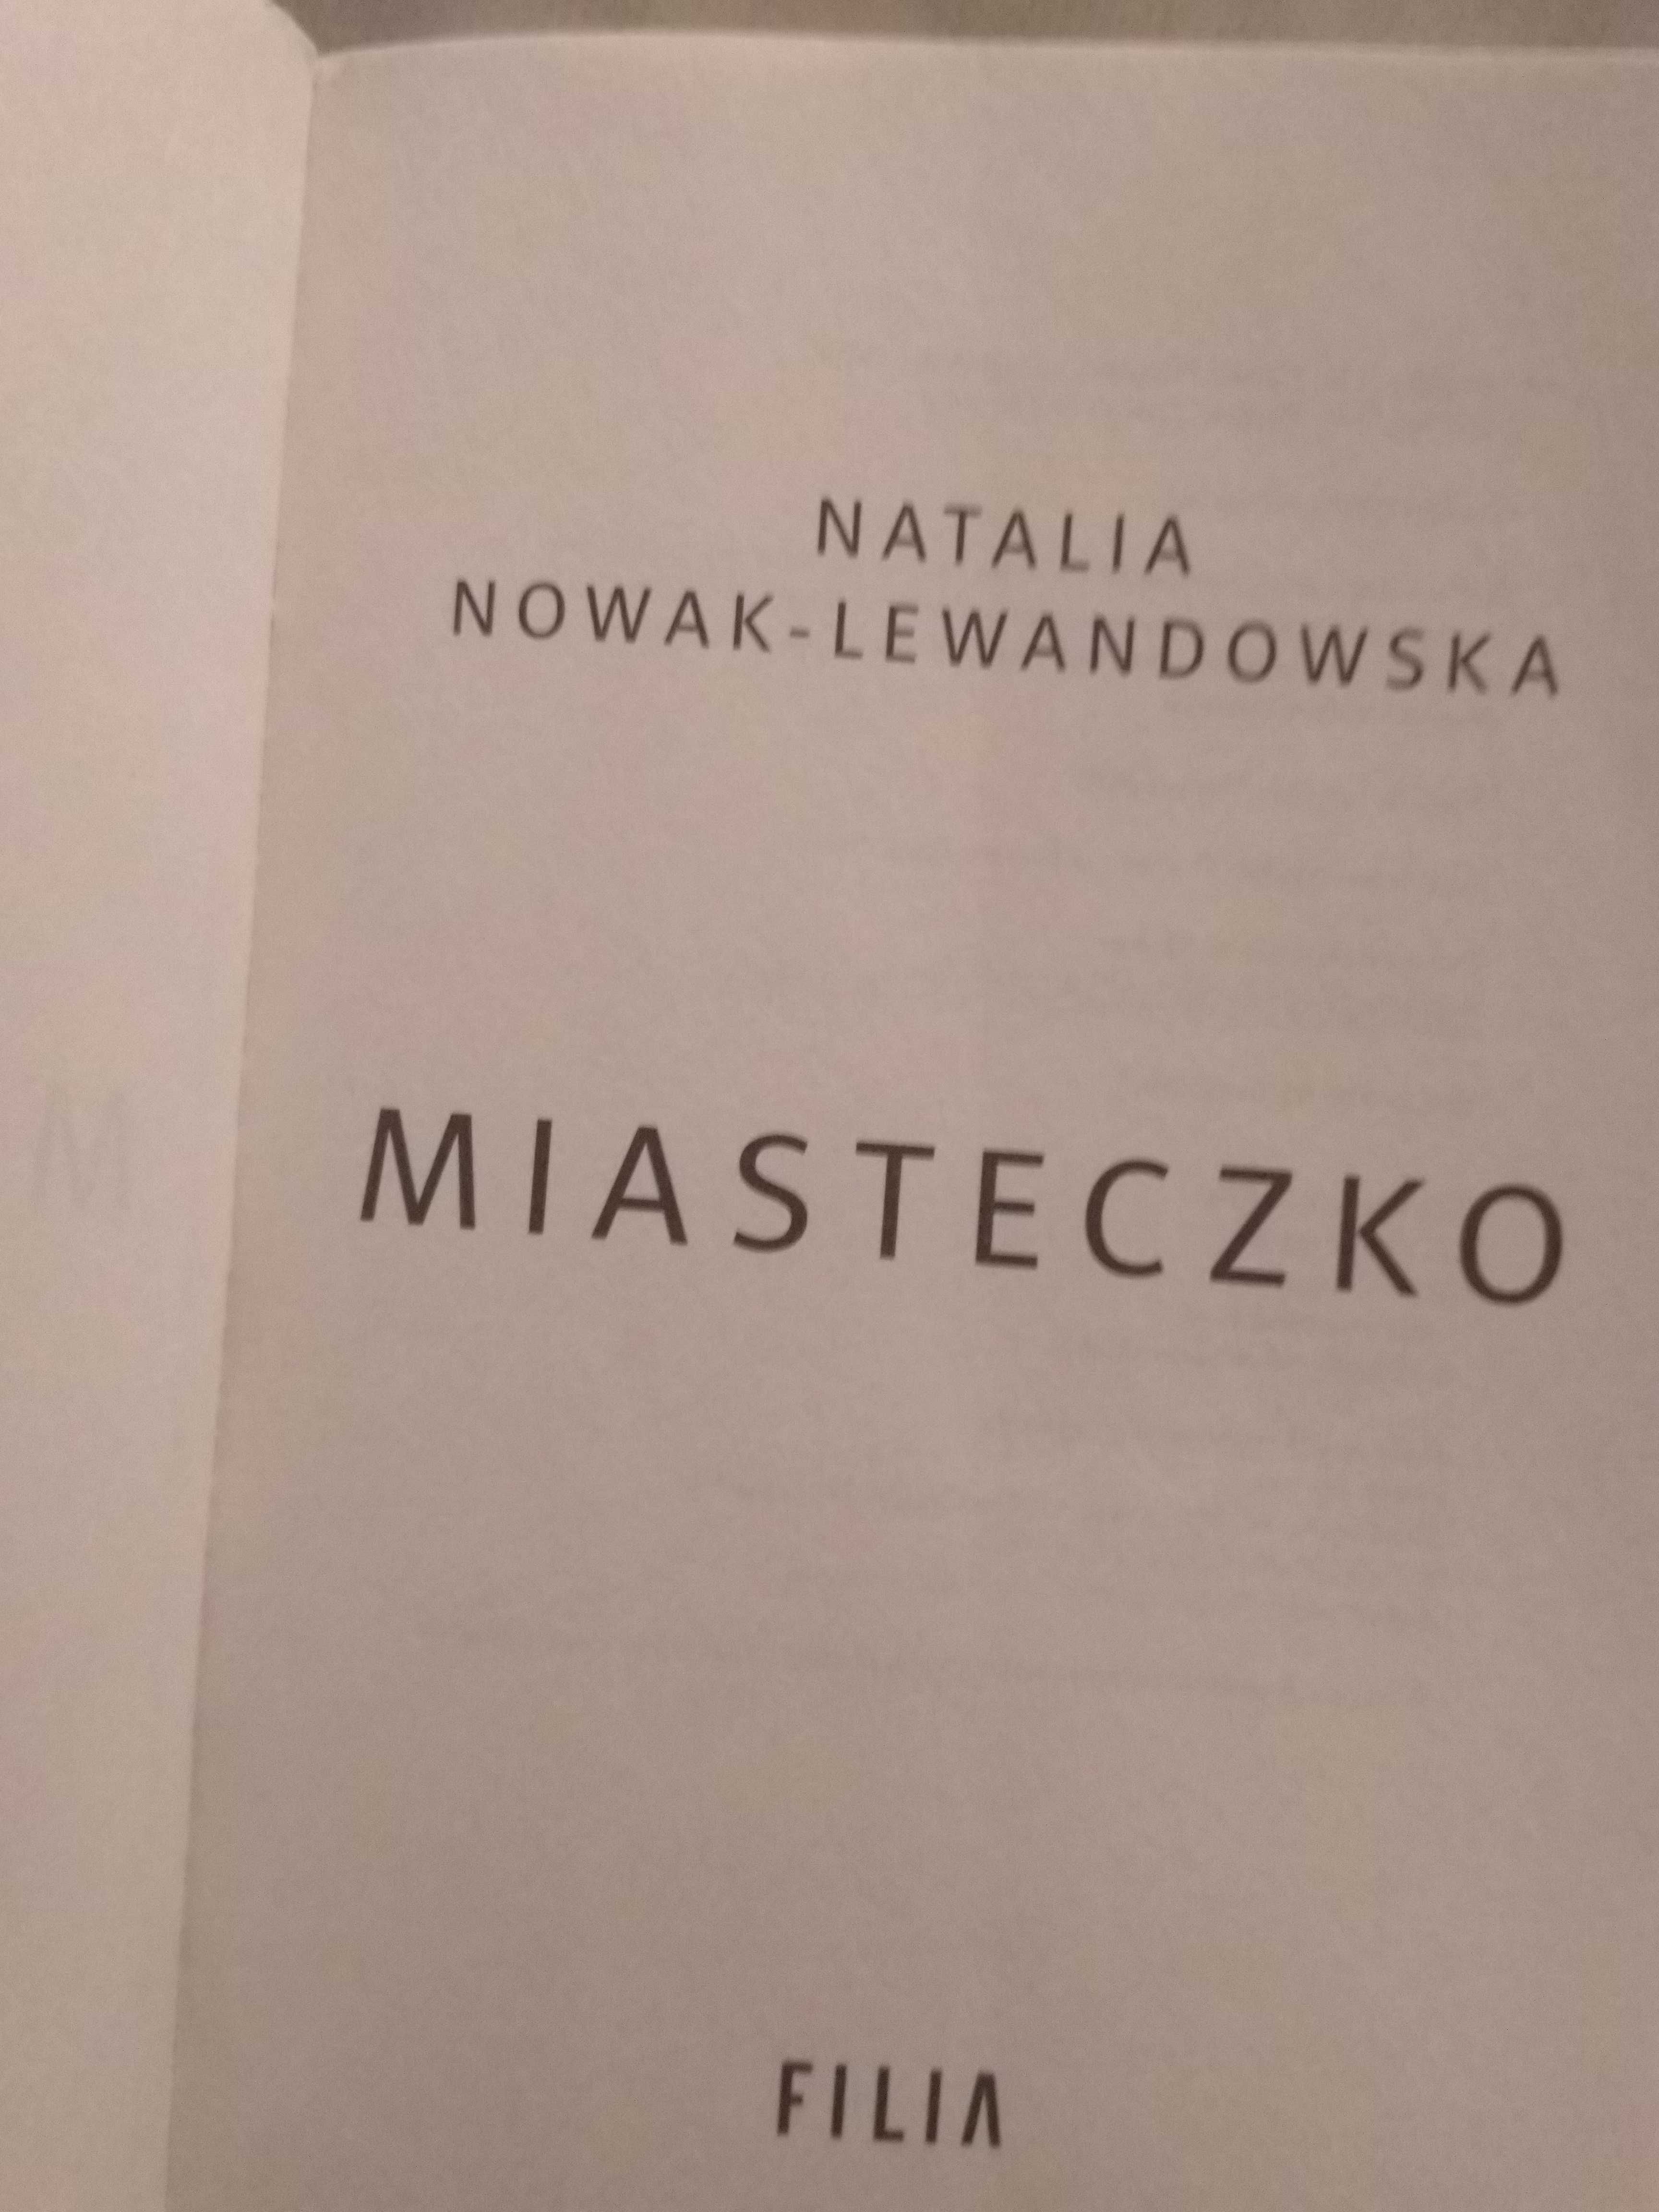 MIASTECZKO - Natalia Nowak-lewandowska